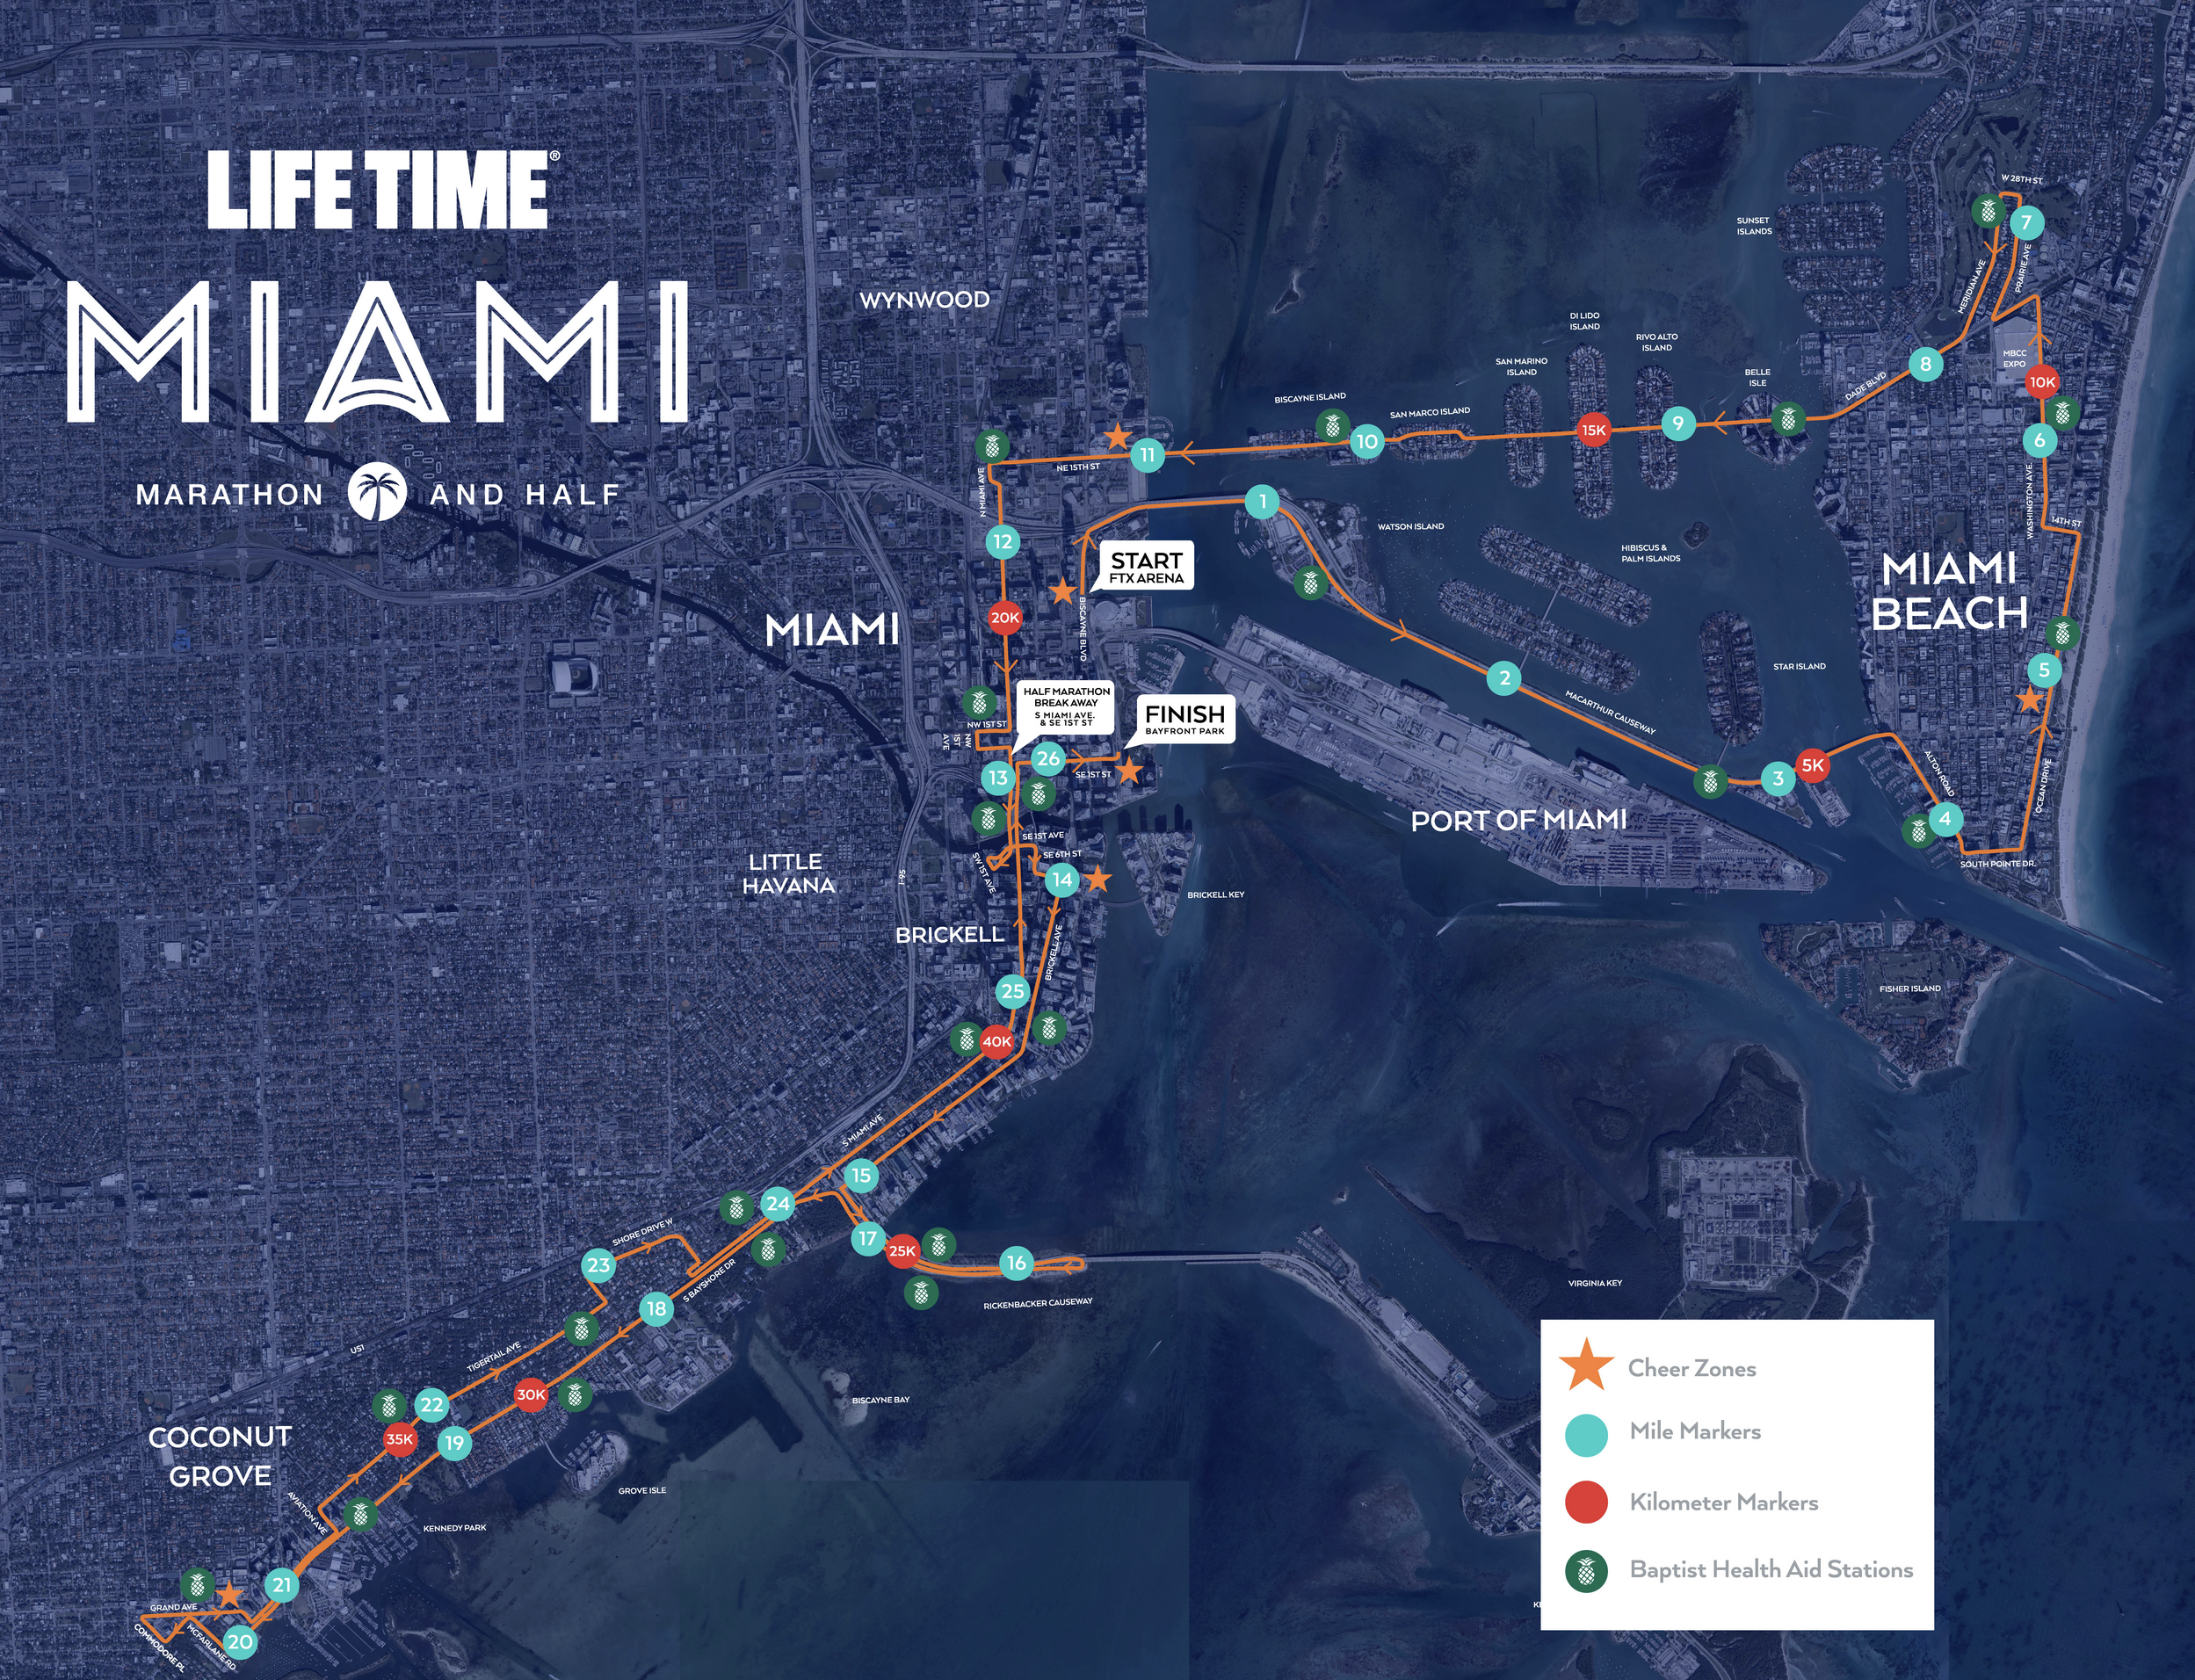 La maratón de Miami ofrece tres opciones a los entusiastas.